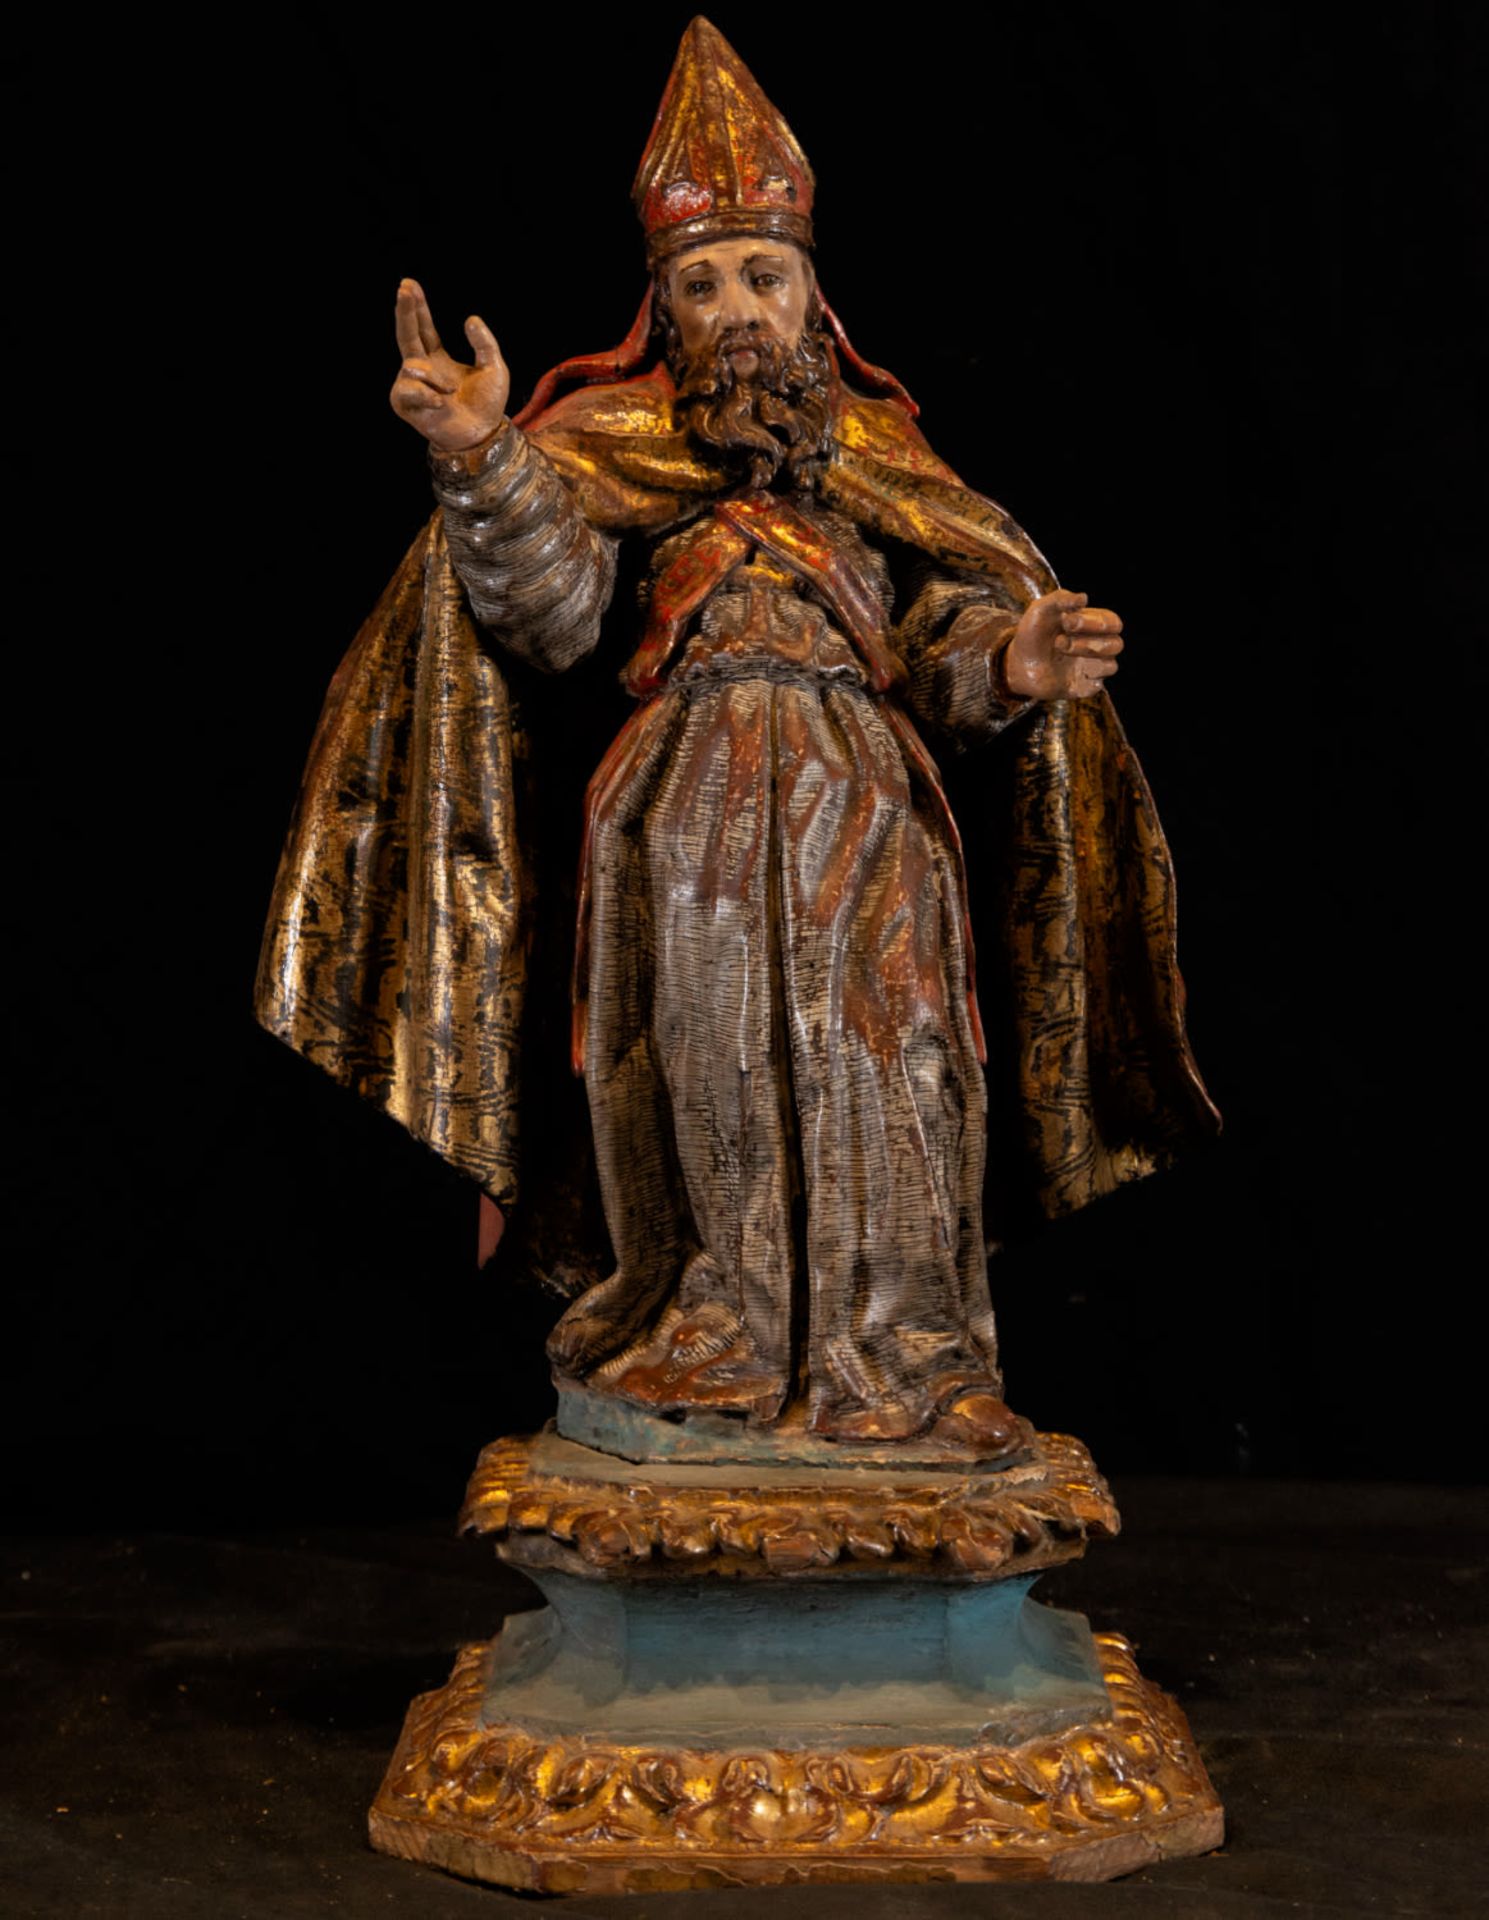 Sculpture of Saint Nicholas of Bari, 17th century